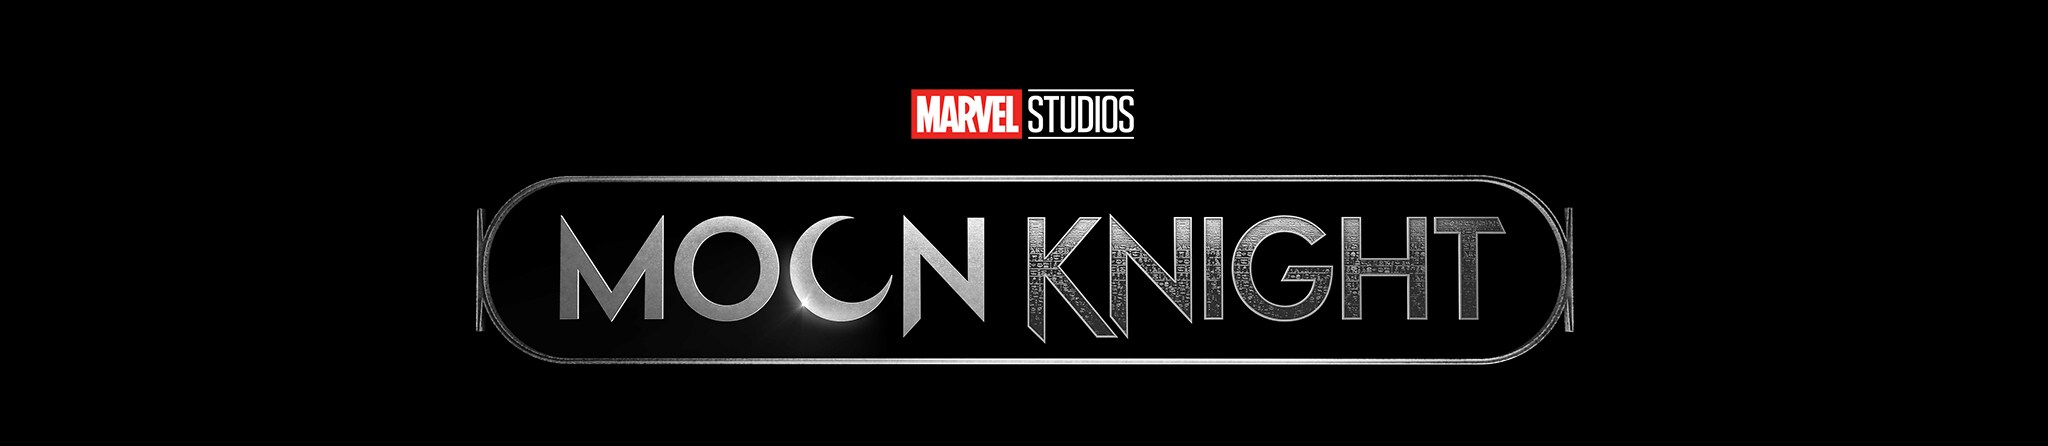 Marvel Studios | Moon Knight